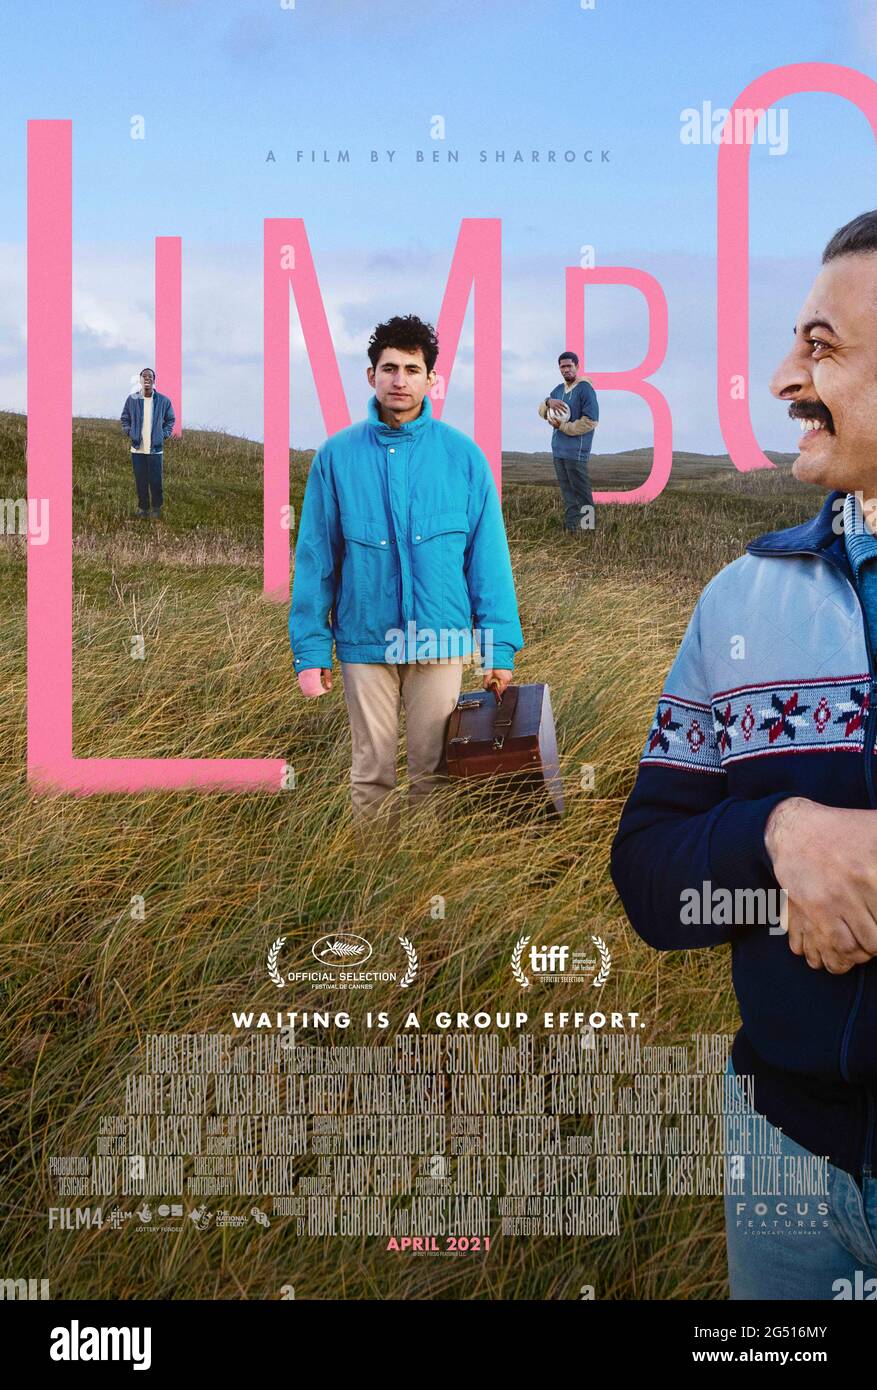 Limbo (2020) unter der Regie von Ben Sharrock mit Sidse Babett Knudsen, Kenneth Collard und Amir El-Masry. Omar ist ein vielversprechender junger Musiker. Getrennt von seiner syrischen Familie sitzt er auf einer abgelegenen schottischen Insel fest und wartet auf das Schicksal seines Asylantrags. Stockfoto